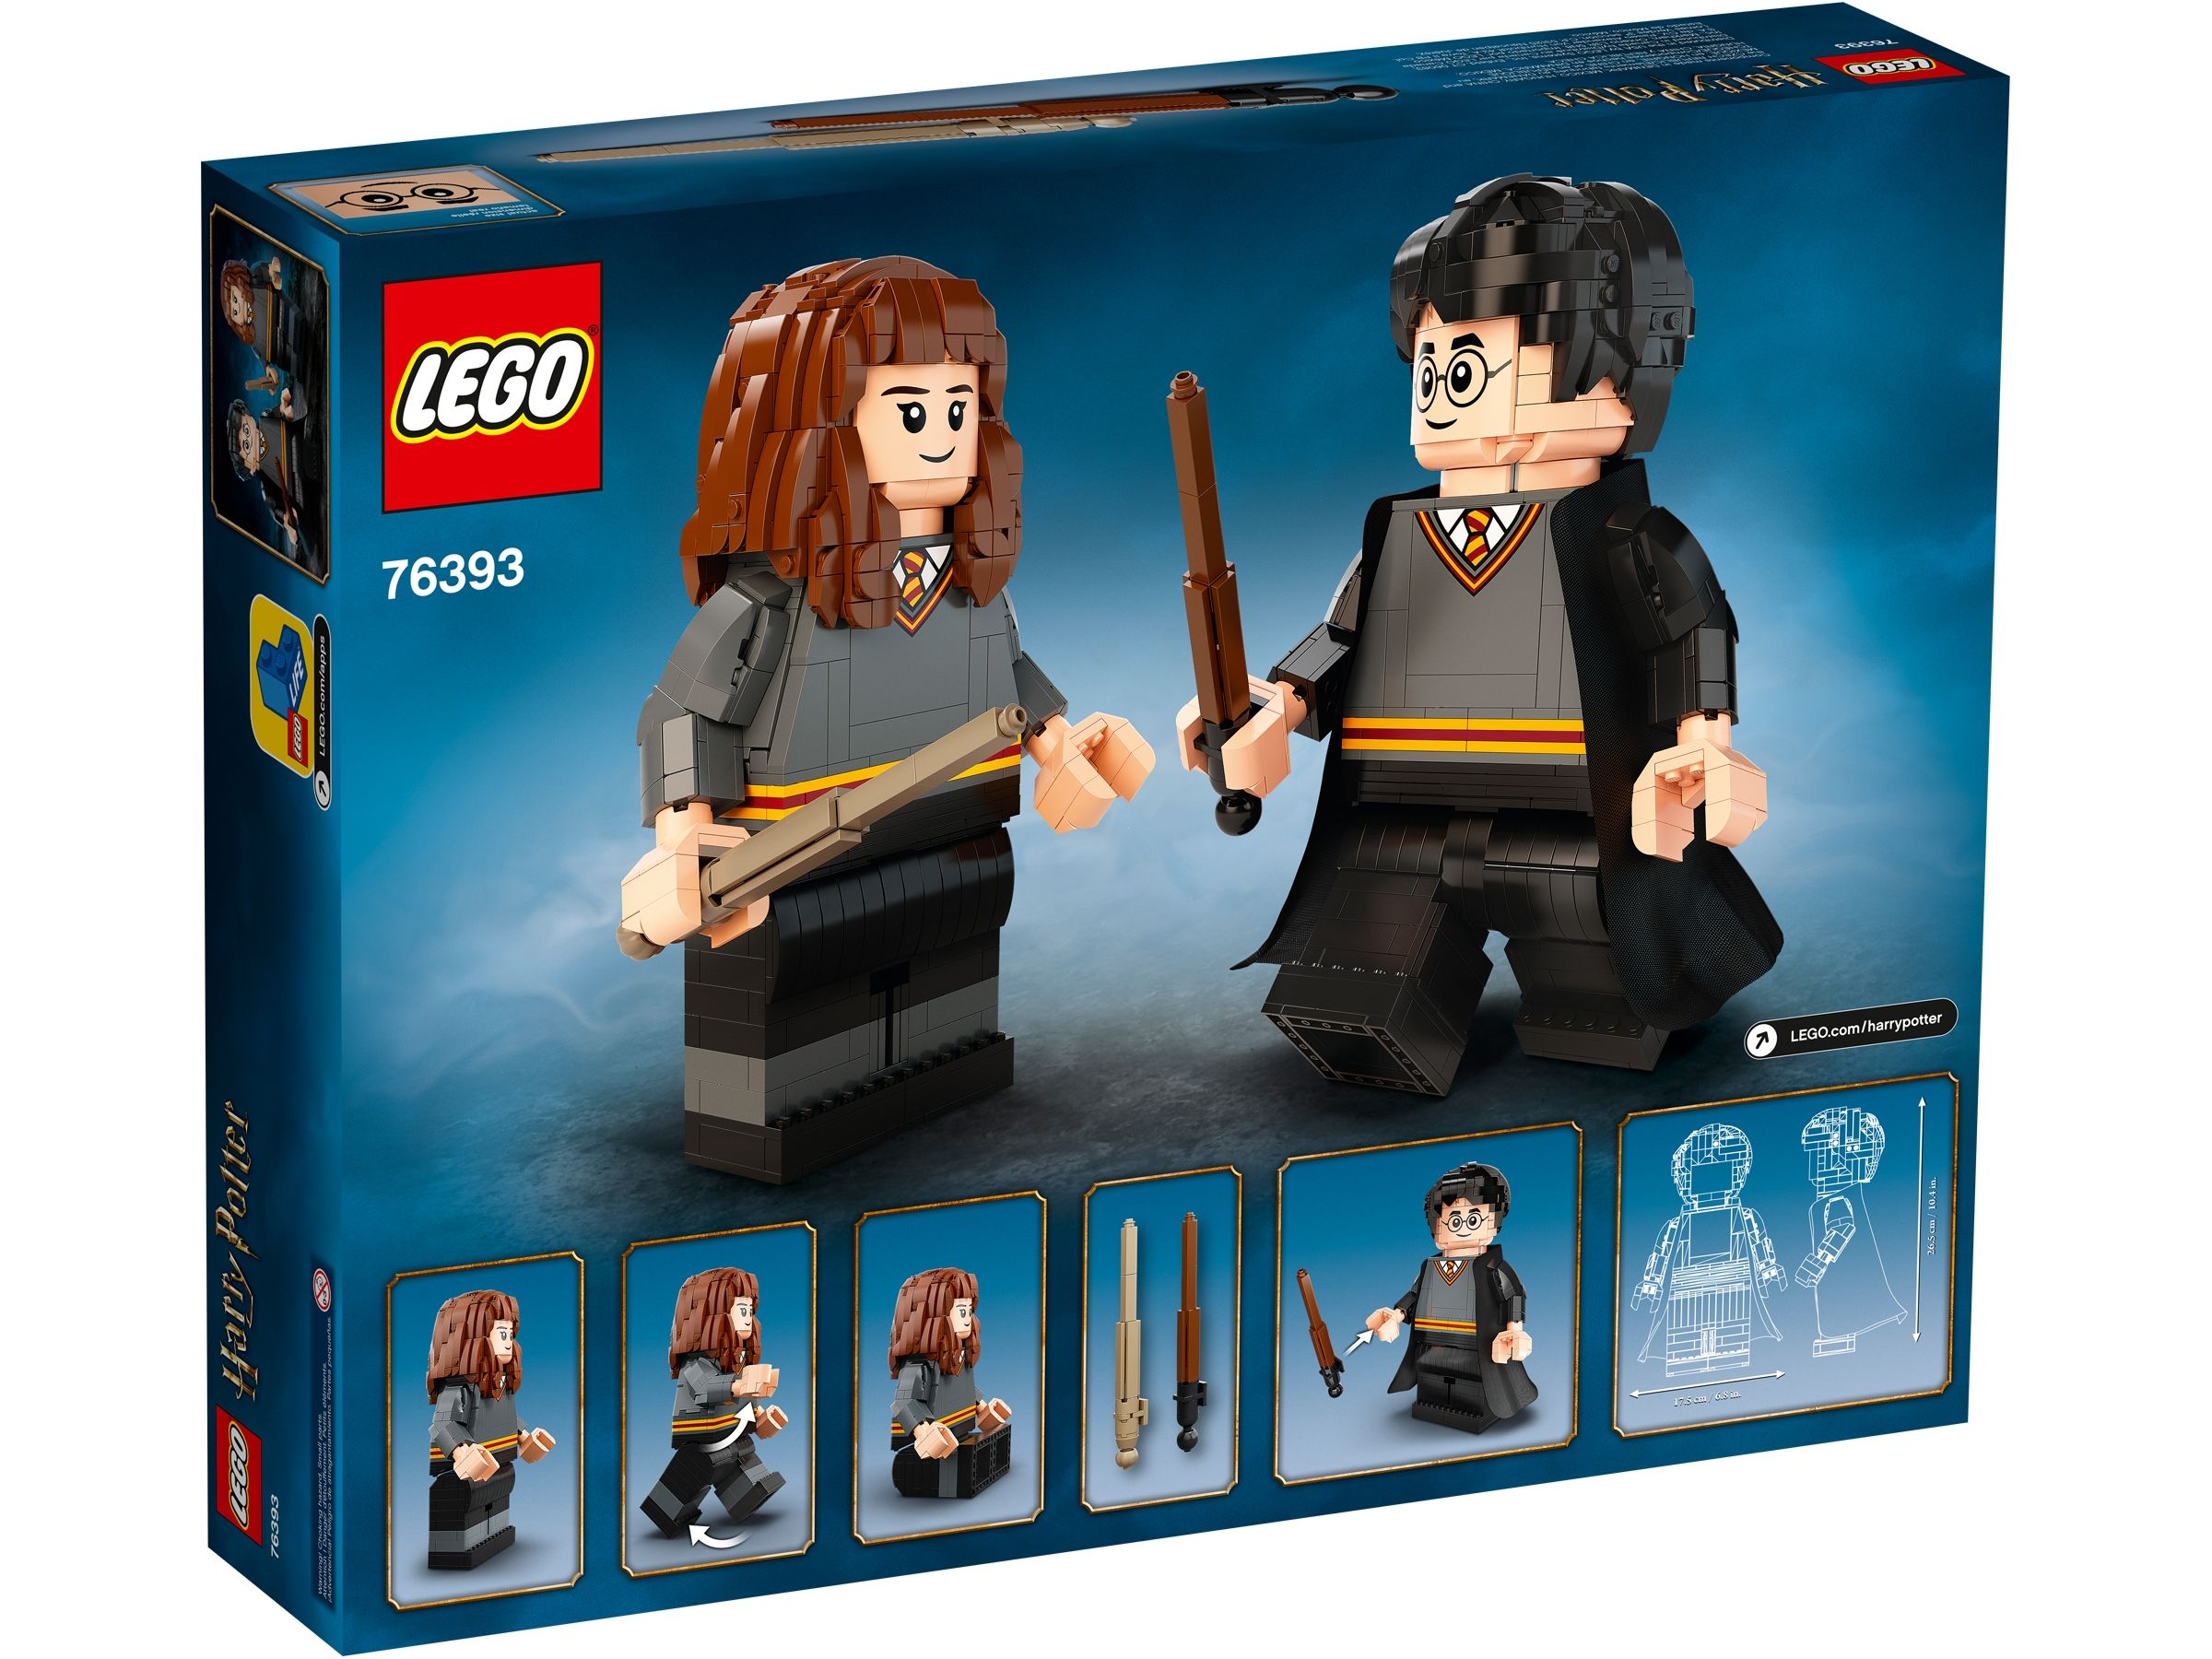 LEGO Harry Potter 76393 Harry Potter™ & Hermine Granger™ LEGO_76393_alt10.jpg